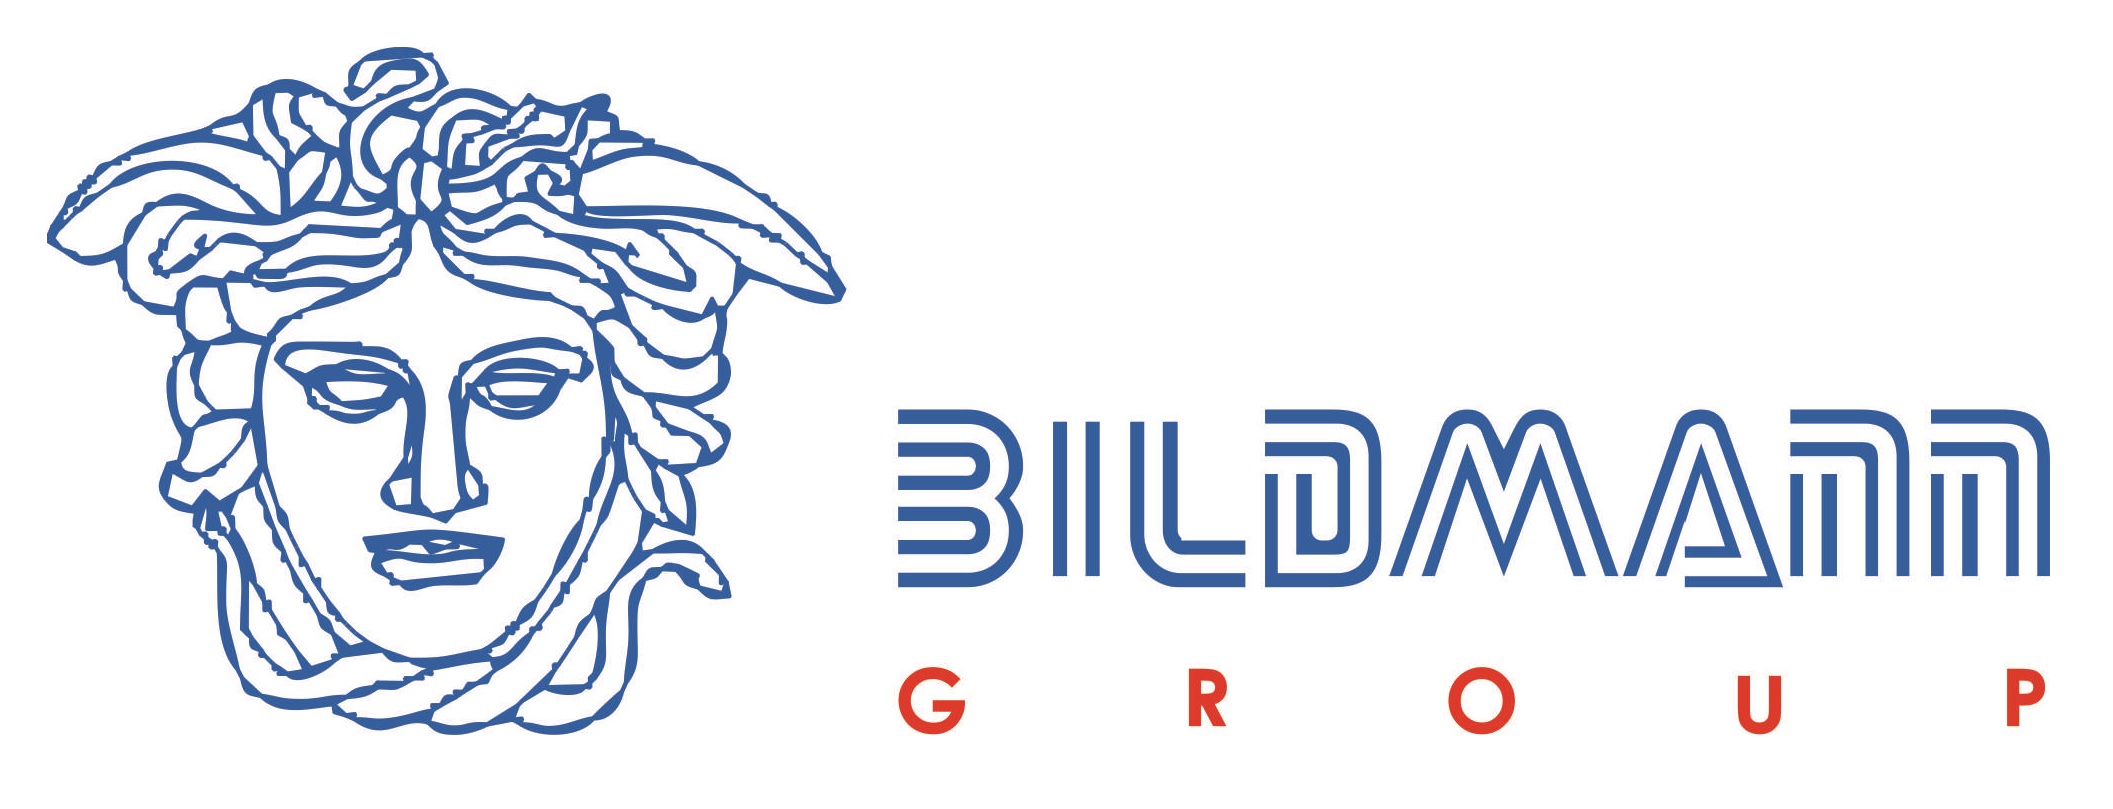 Blidmann group Lublin logo